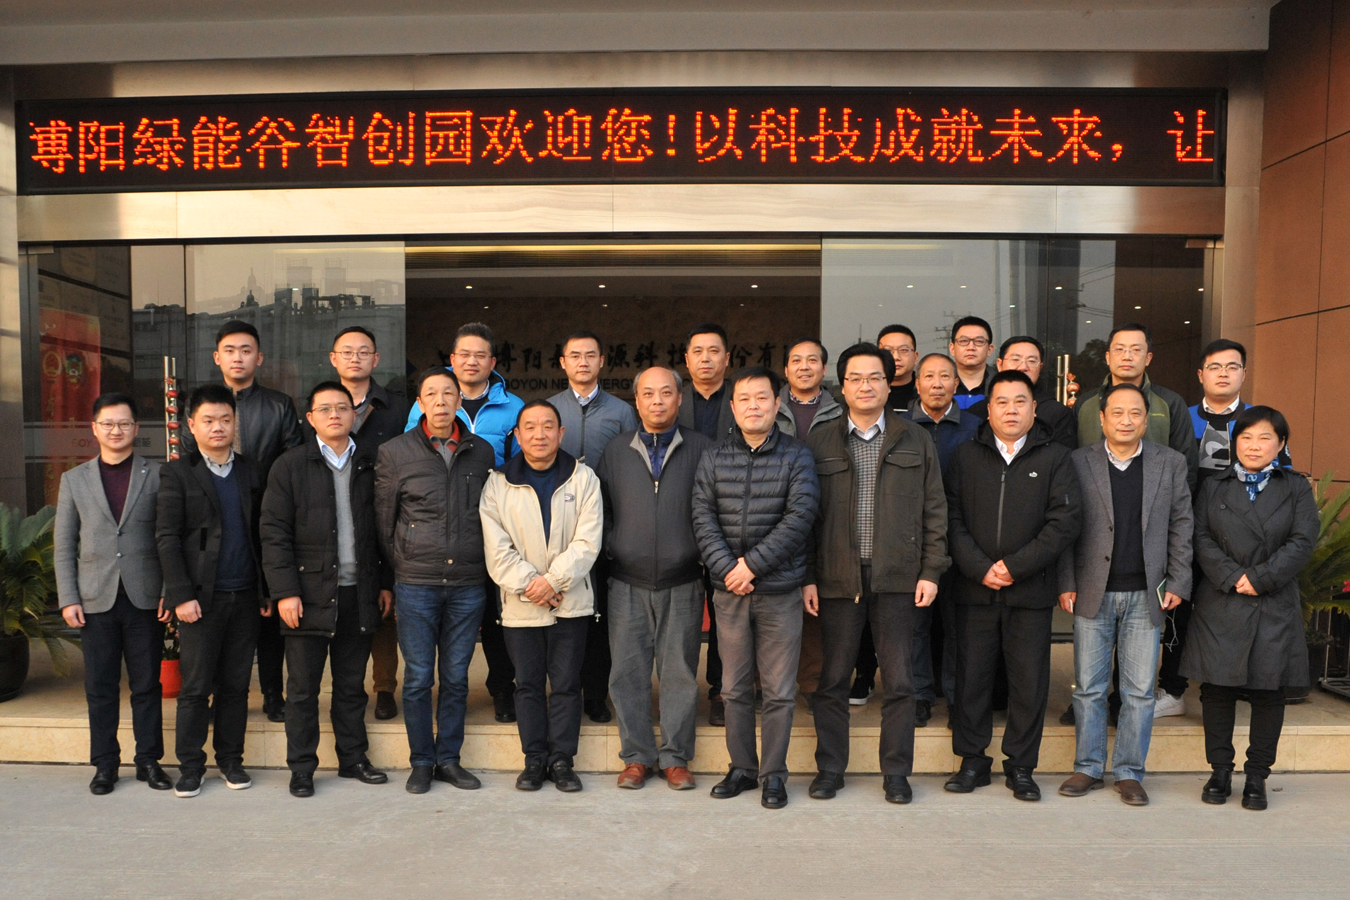 上海市太阳能学会第十届二次理事会在88805tccn新蒲京召开